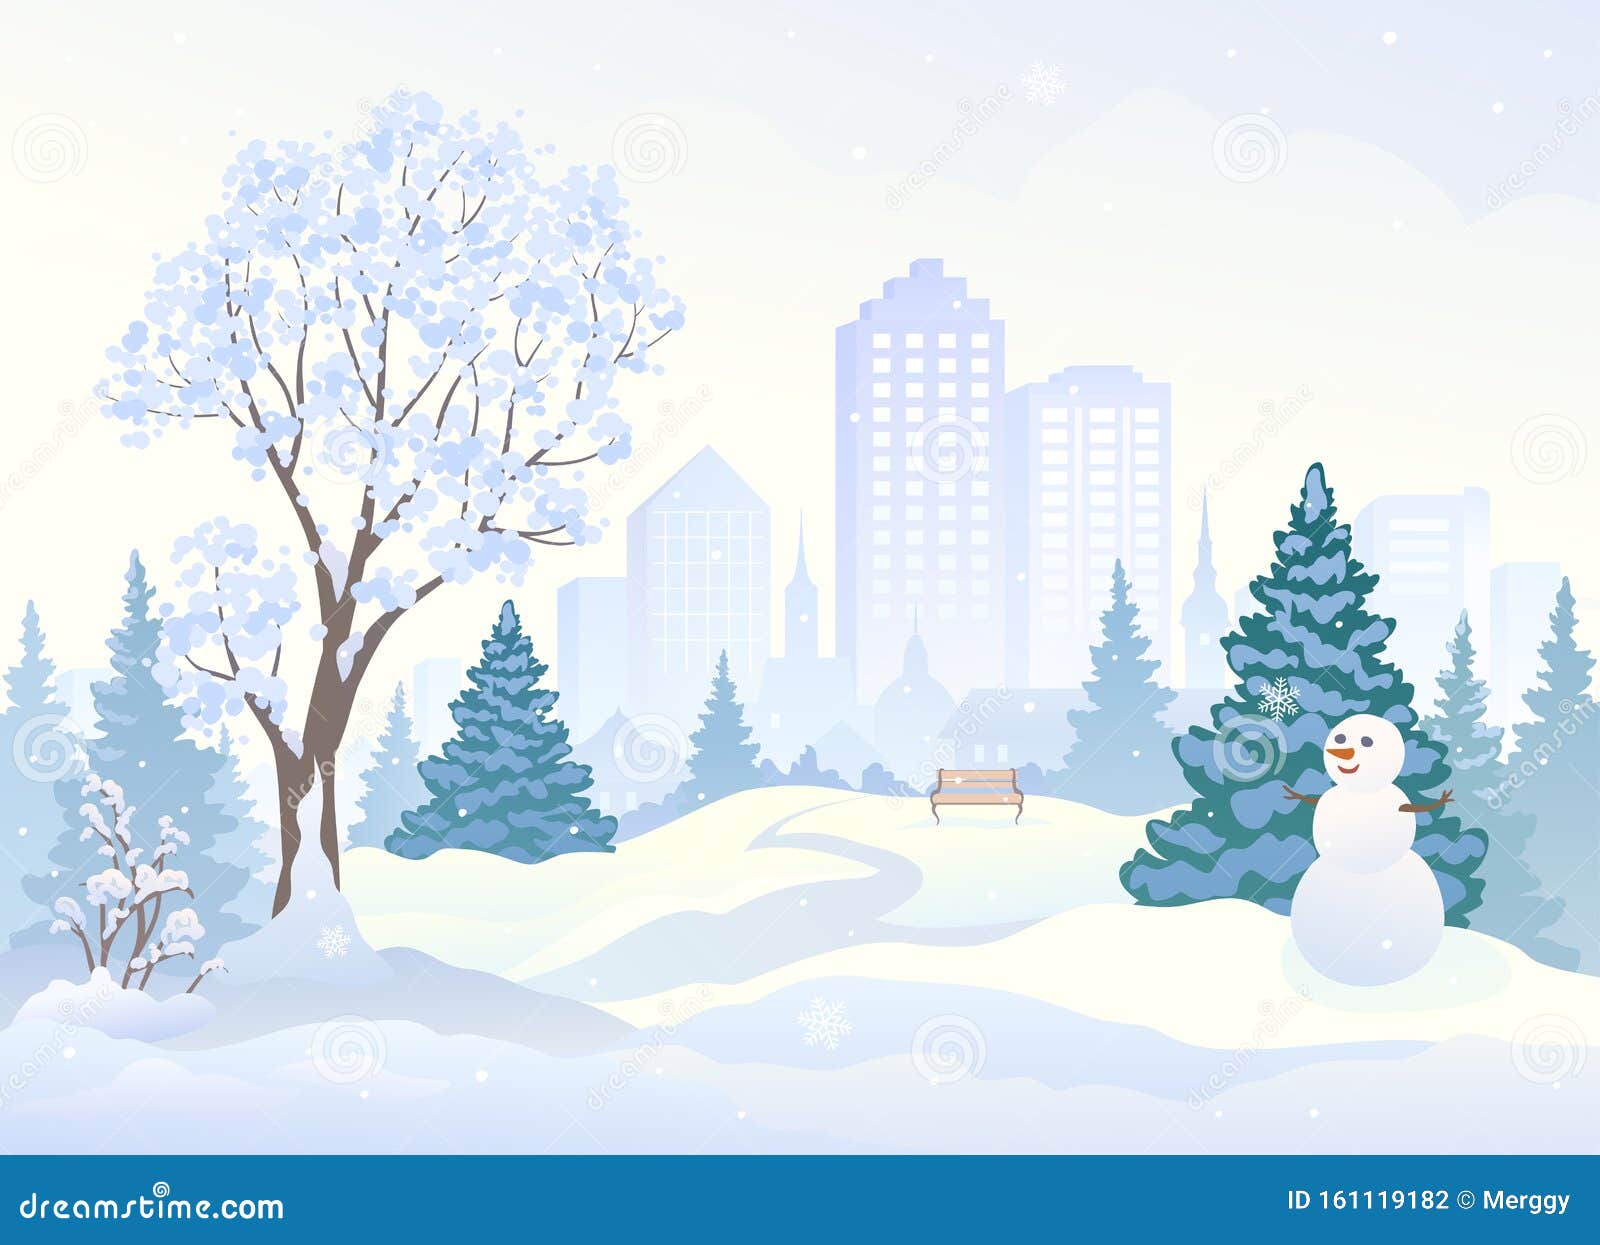 雪地公园 有个可爱的雪人向量例证 插画包括有本质 户外 通路 小径 景观 都市风景 布琼布拉